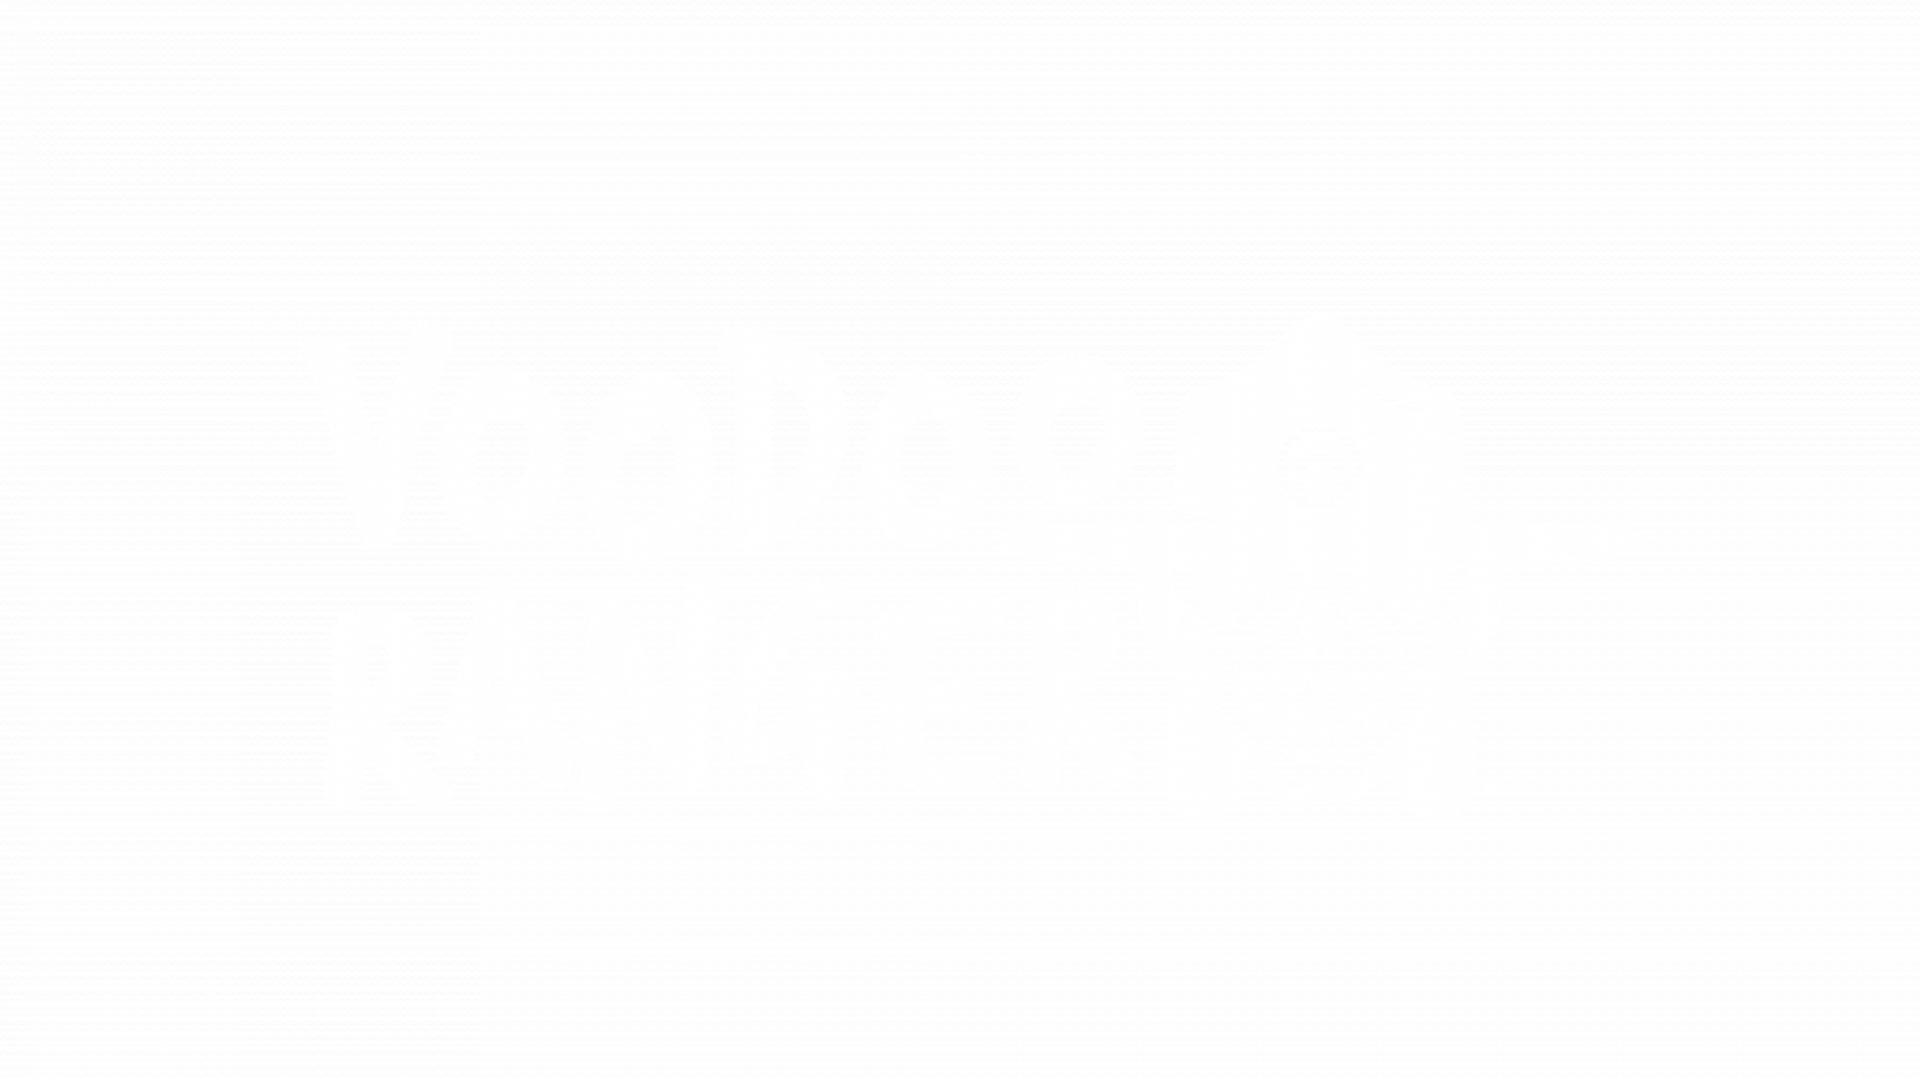 web sponsor logos - all white_VOODOO RANGER